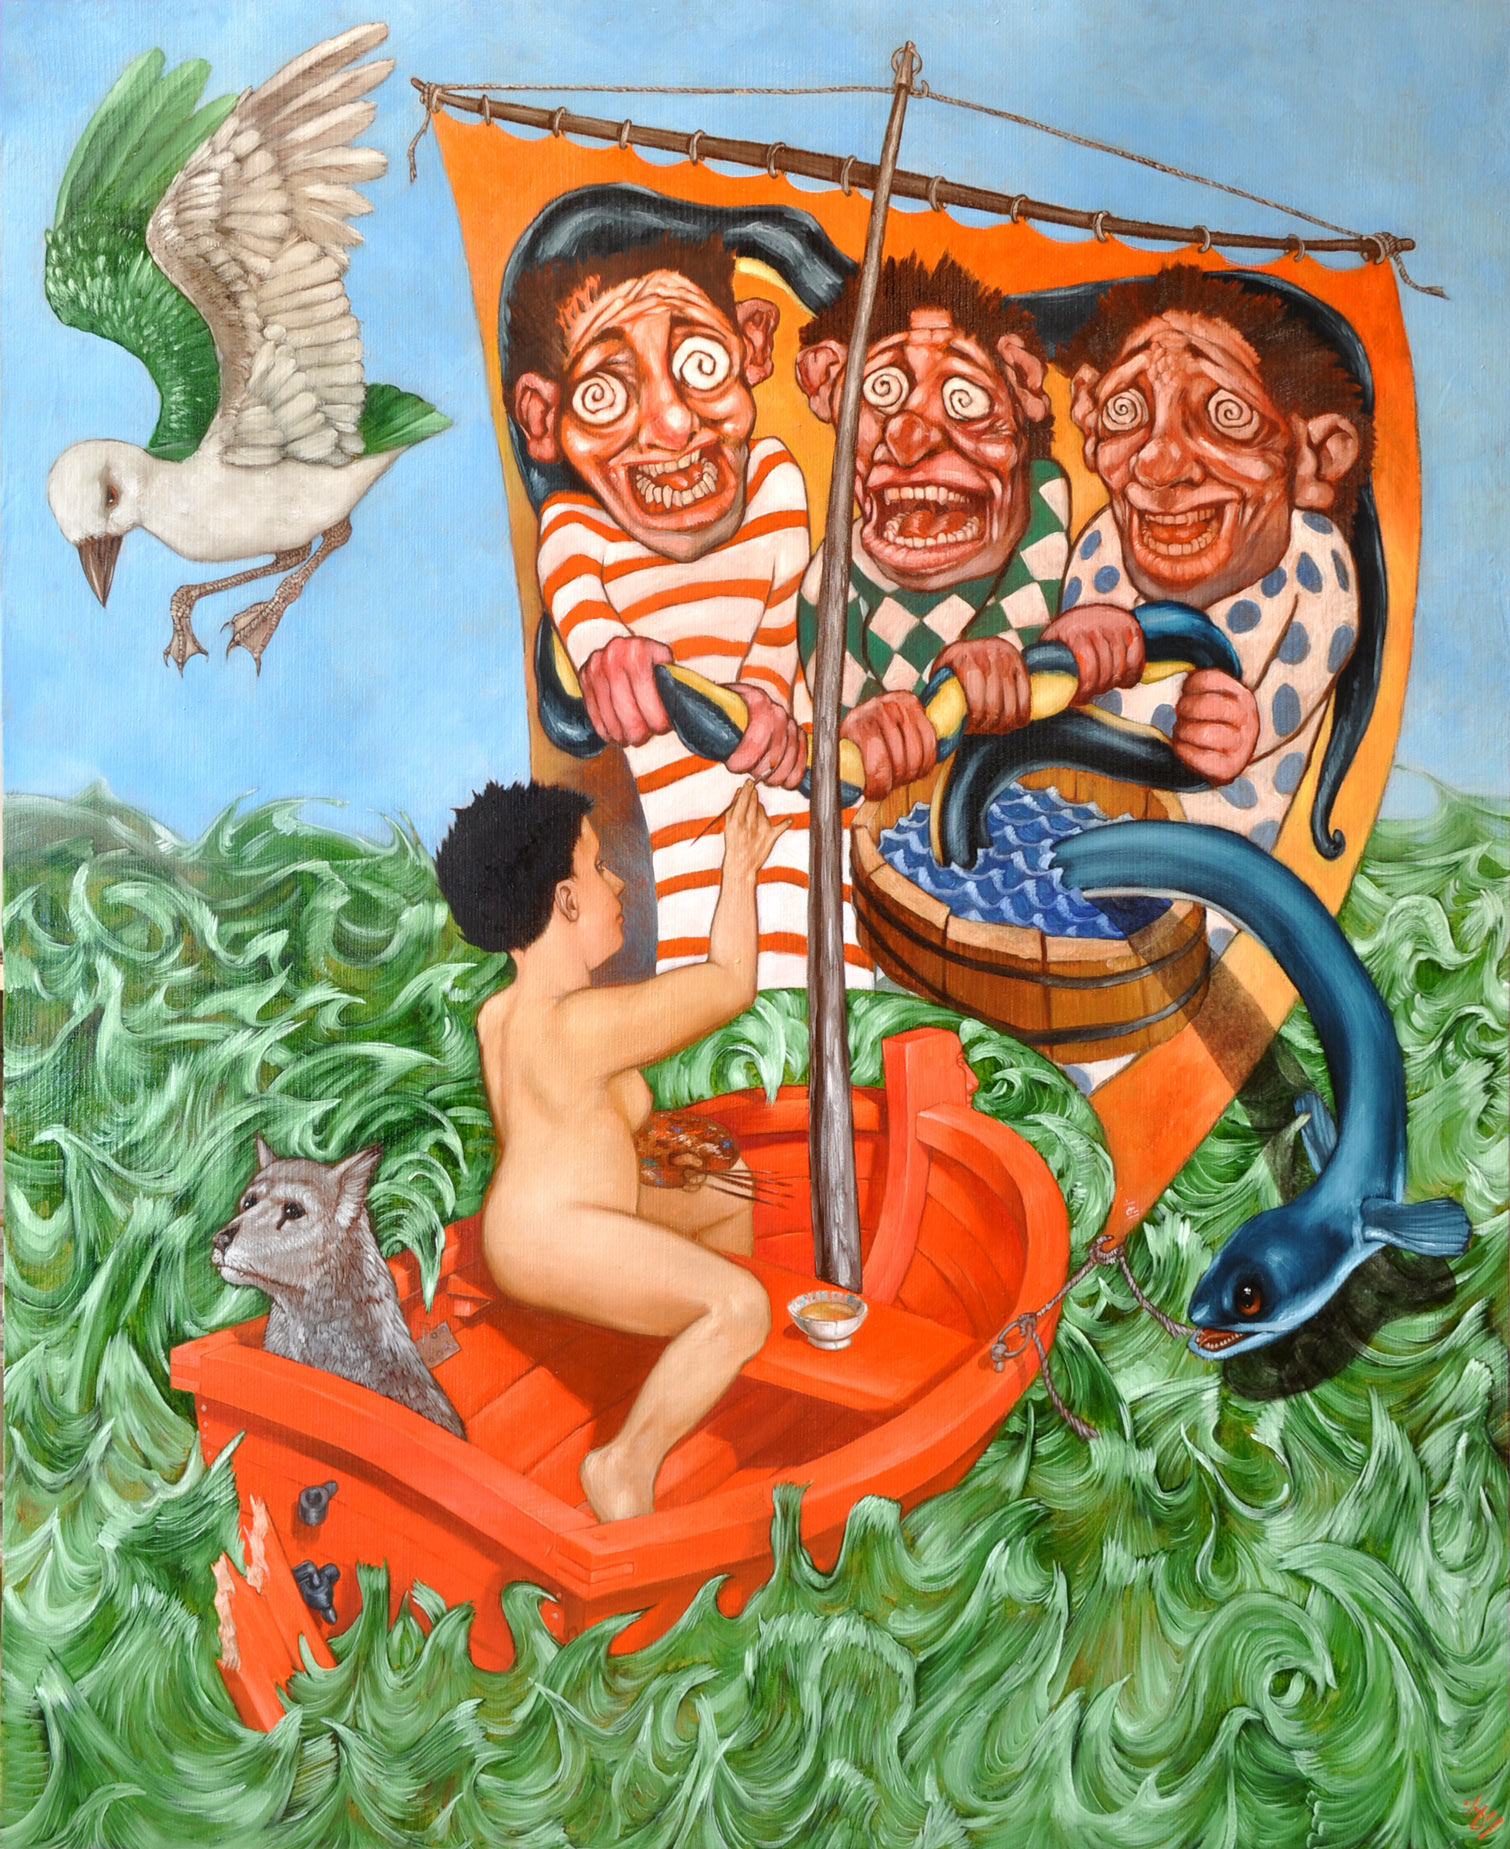 Une peintresse, nue dans une barque rouge, accompagnée d'un chien gris. La palette à la main, elle peint sur la voile de sa barque trois personnages caricaturaux, hilares, qui essayent de noyer une anguille dans un baquet d'eau. Une mouette dans le ciel bleu clair. 